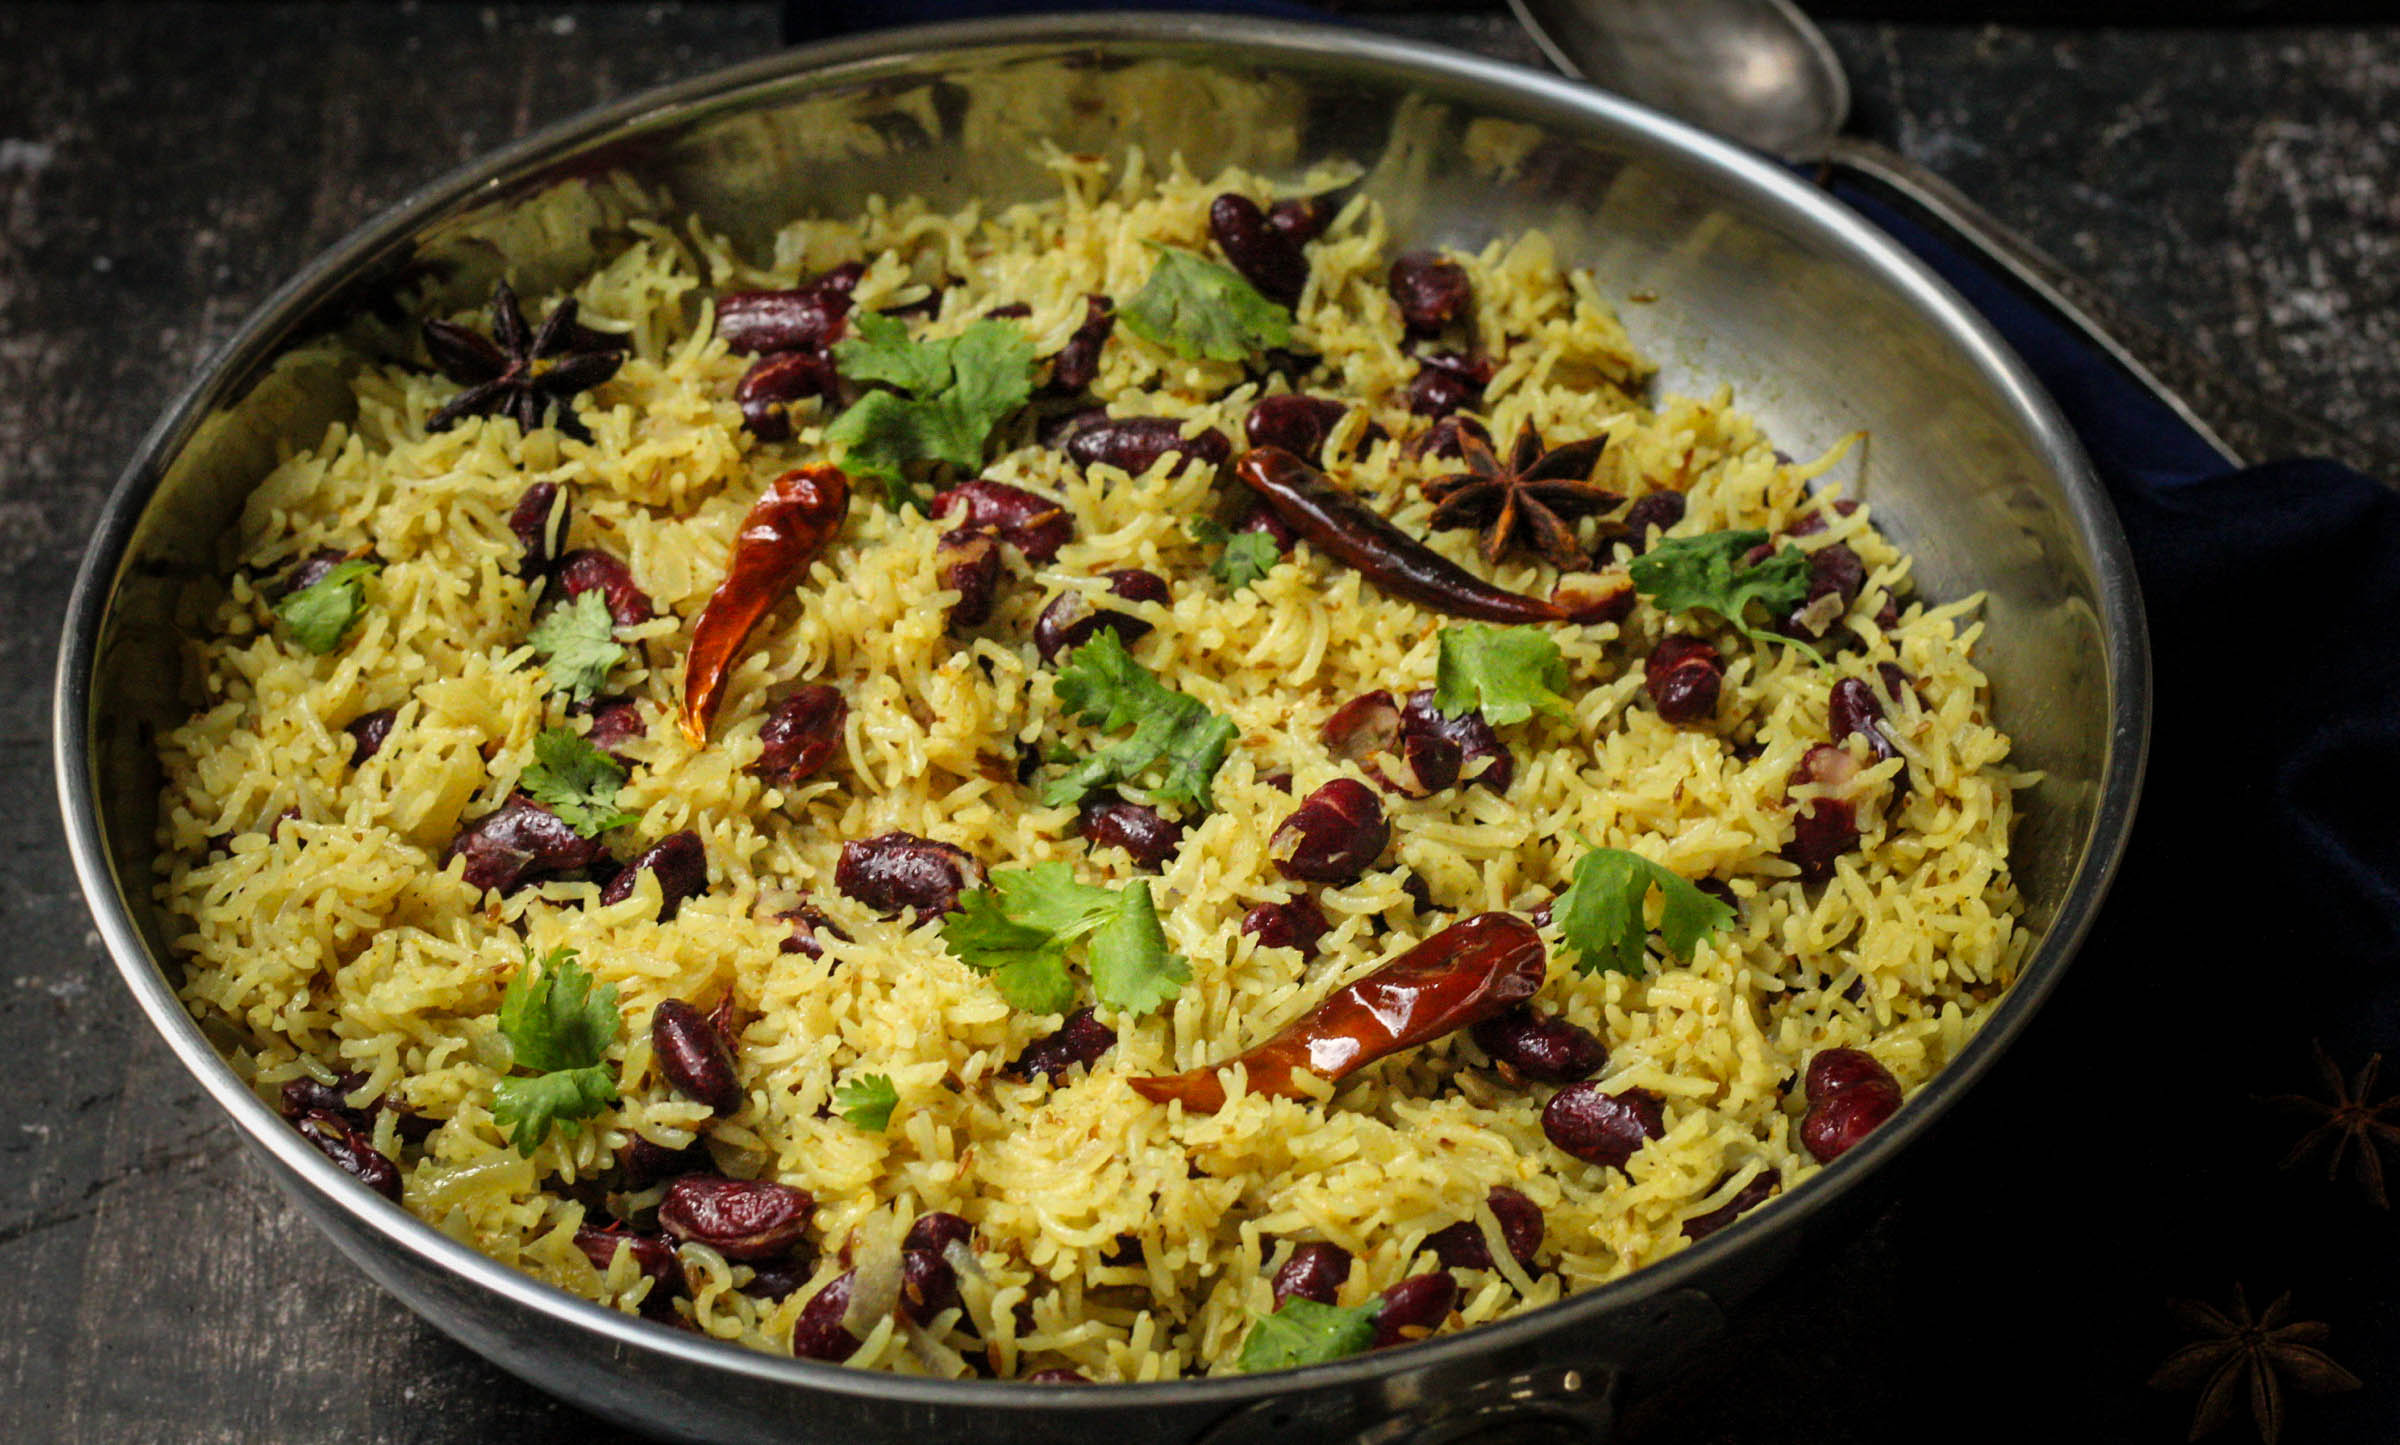 תבשיל אורז ושעועית הודי טבעוני - בסיר 1 - ללא גלוטן